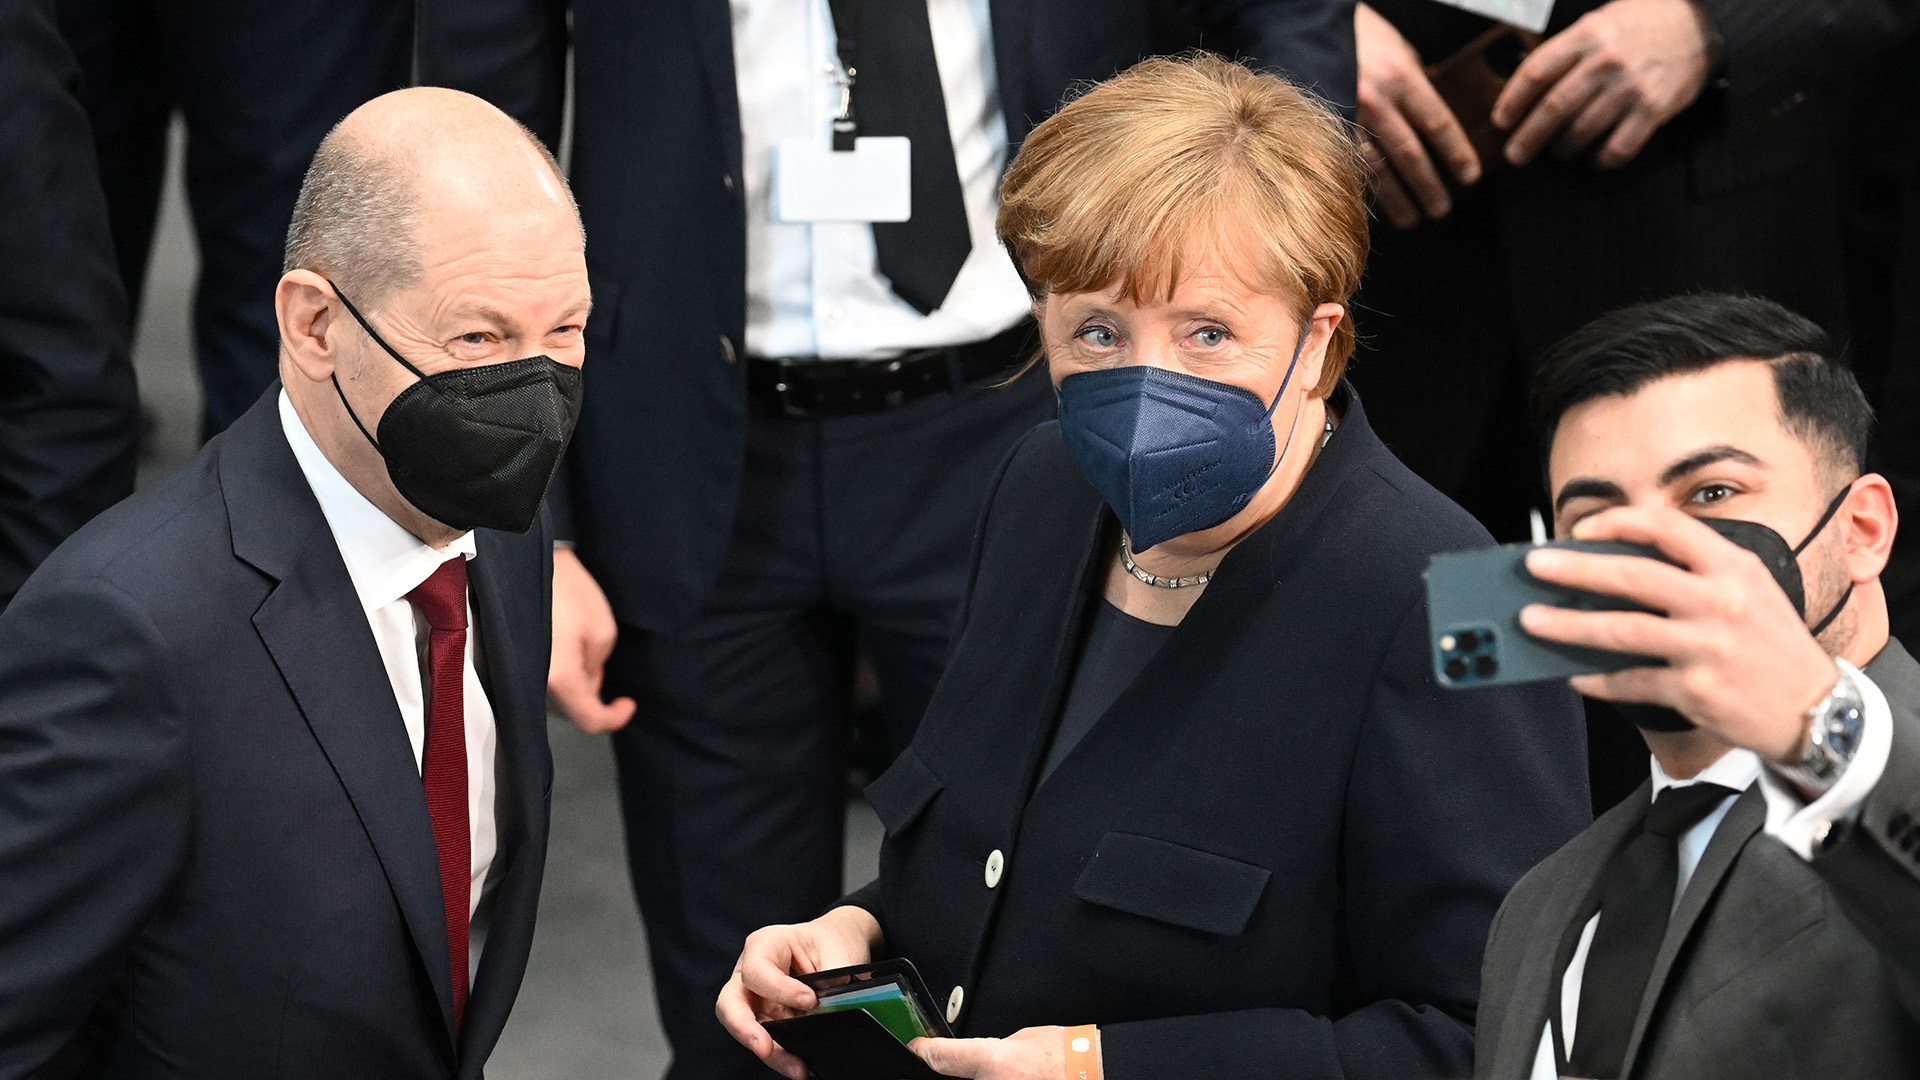 Kanzler Scholz und Ex-Kanzlerin Merkel beim Selfie während der Bundesversammlung | picture alliance/dpa